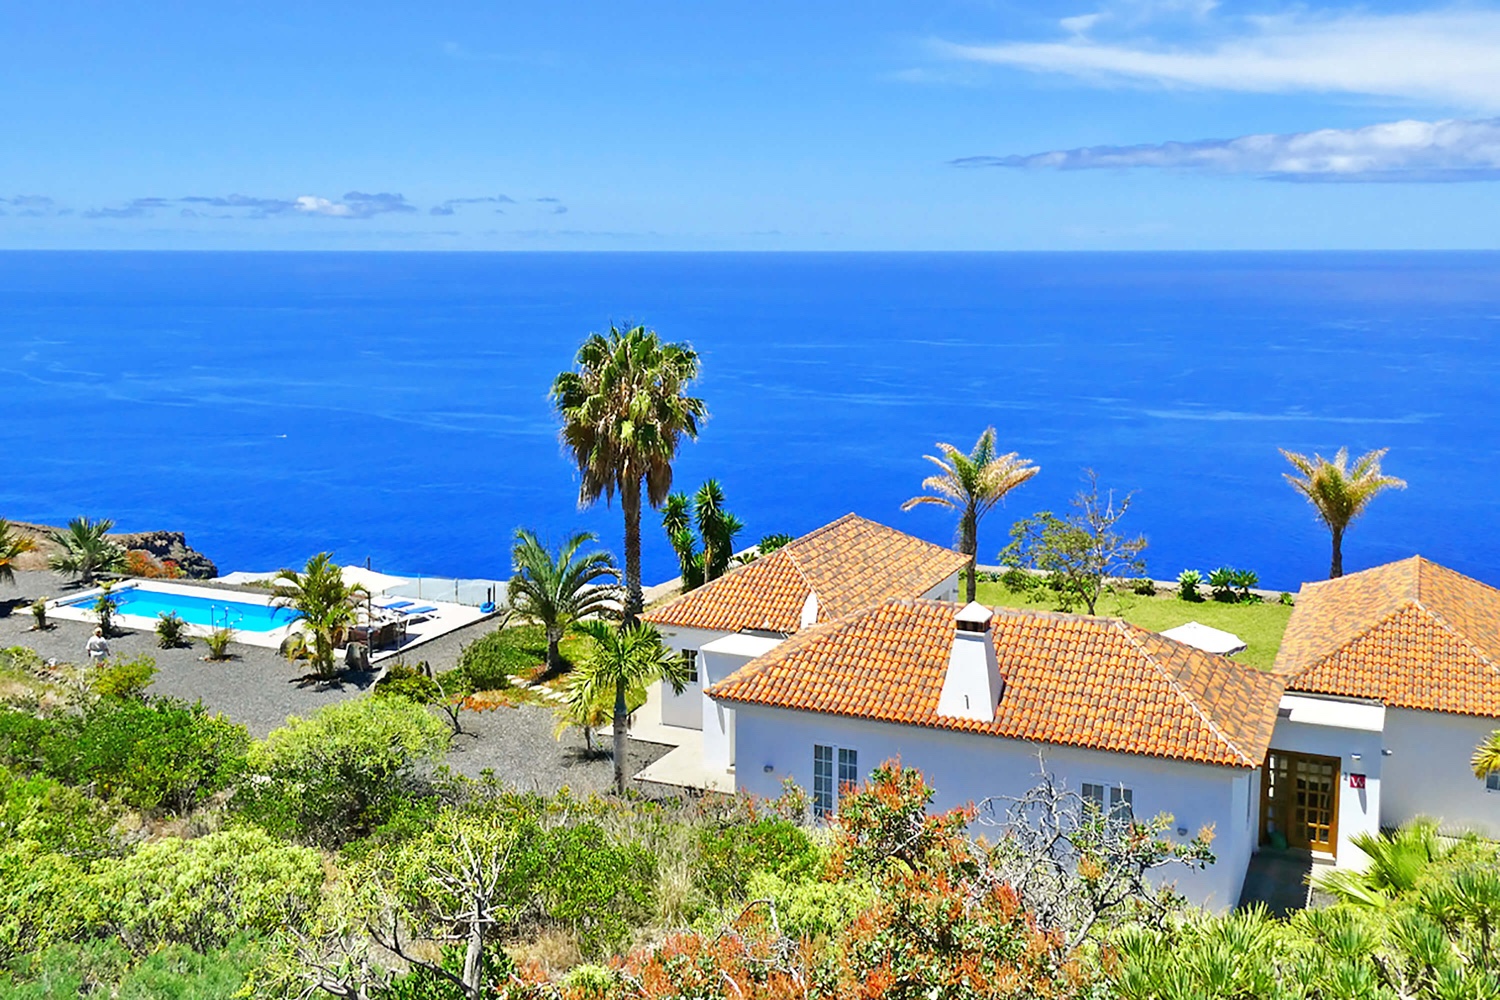 Veldig fint moderne hus med privat basseng og fantastisk panoramautsikt over Atlanterhavet. Det meget velutstyrte feriehuset er ideelt for en ferie på La Palma med alle bekvemmeligheter.